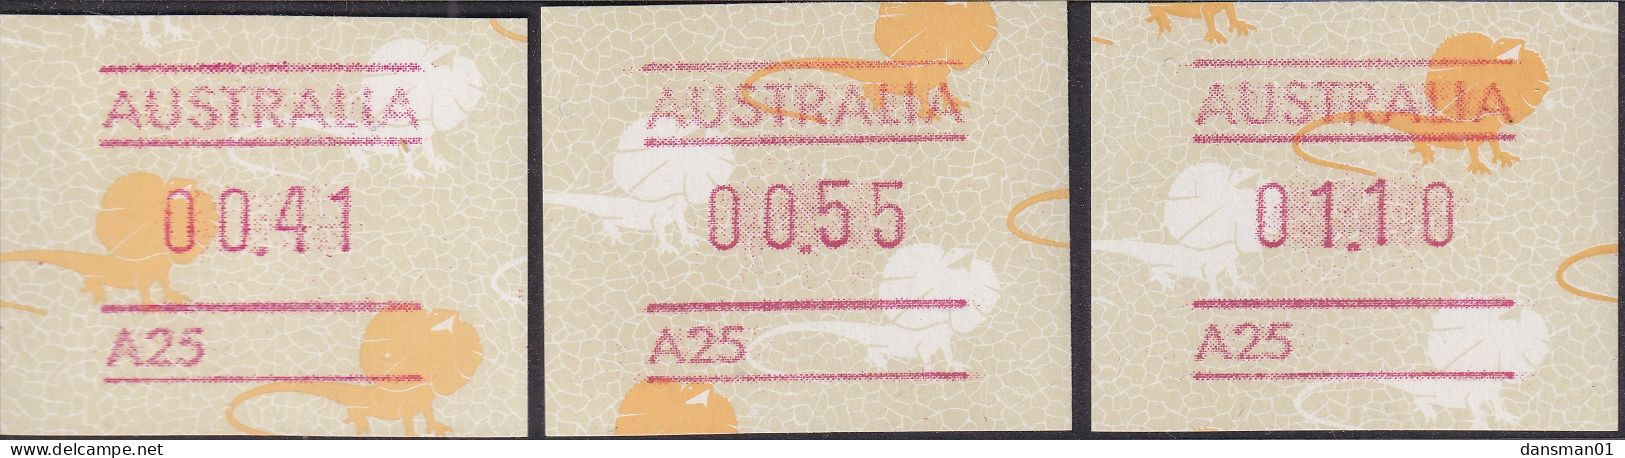 Australia 1989 Frama BUTTON SET A25 MNH - Ongebruikt